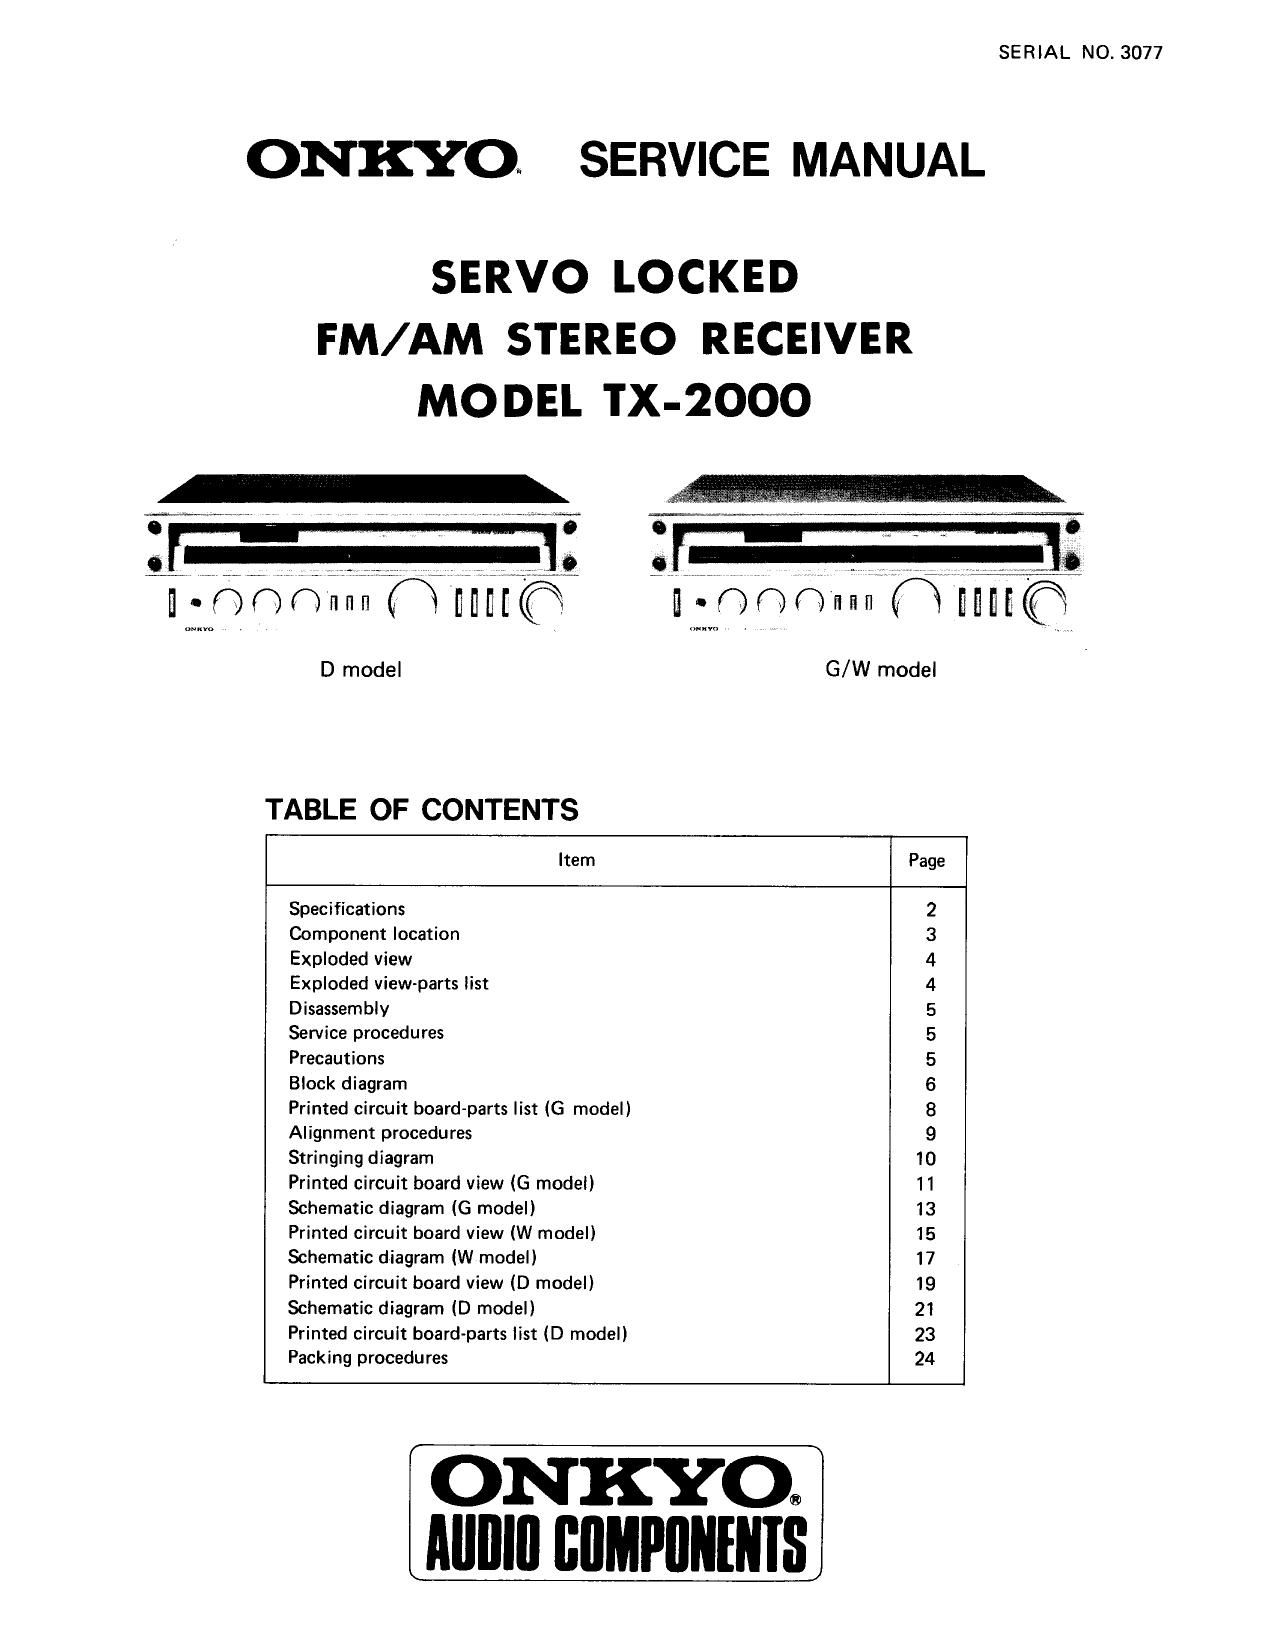 Onkyo TX 2000 Service Manual